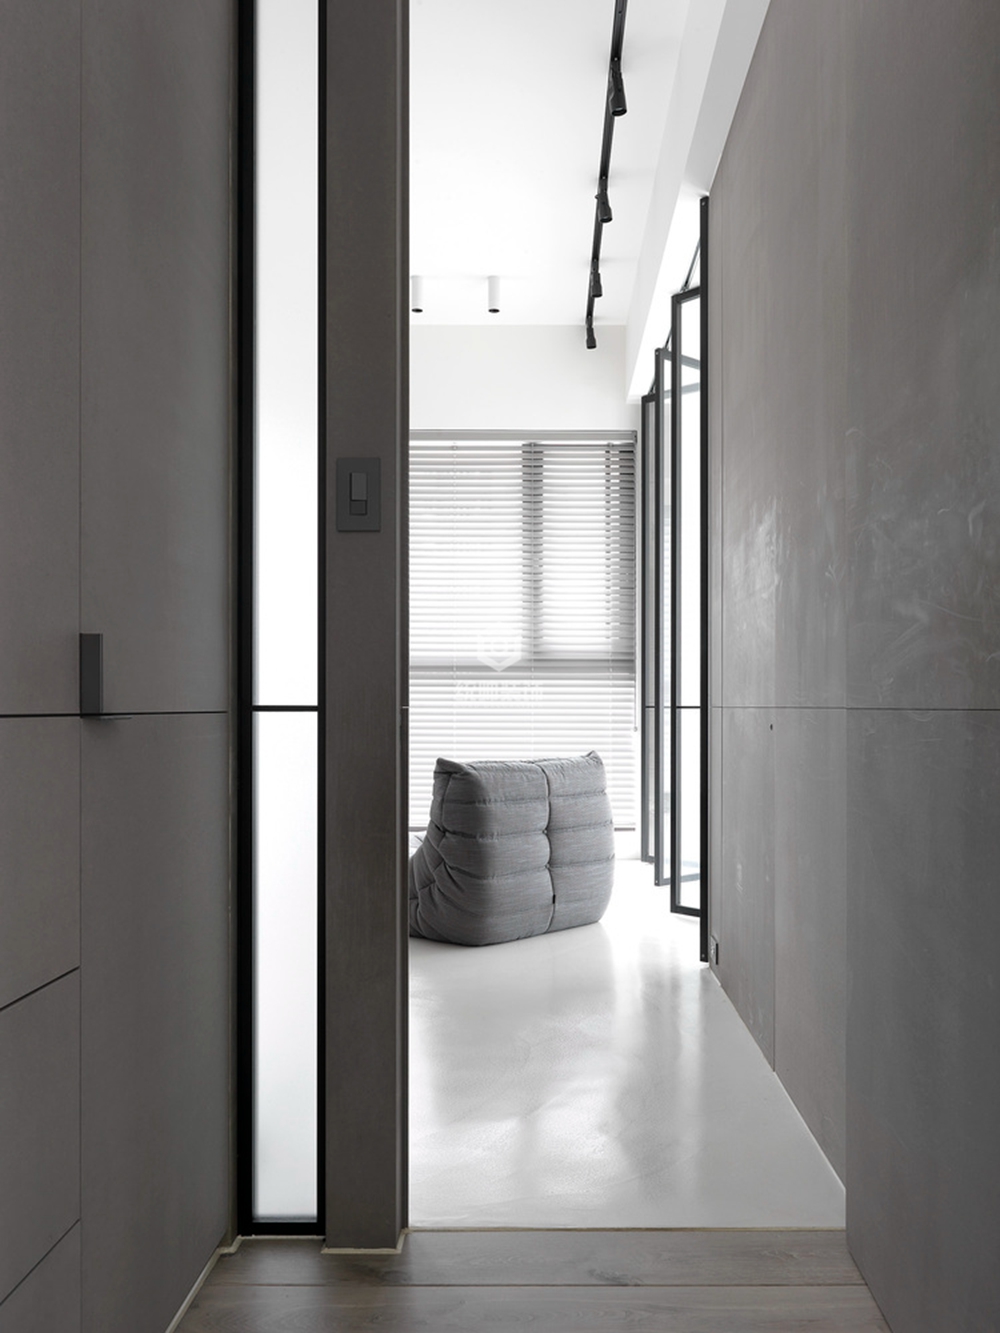 浦东新区证大家园110平方现代简约风格两房两厅客厅装修效果图